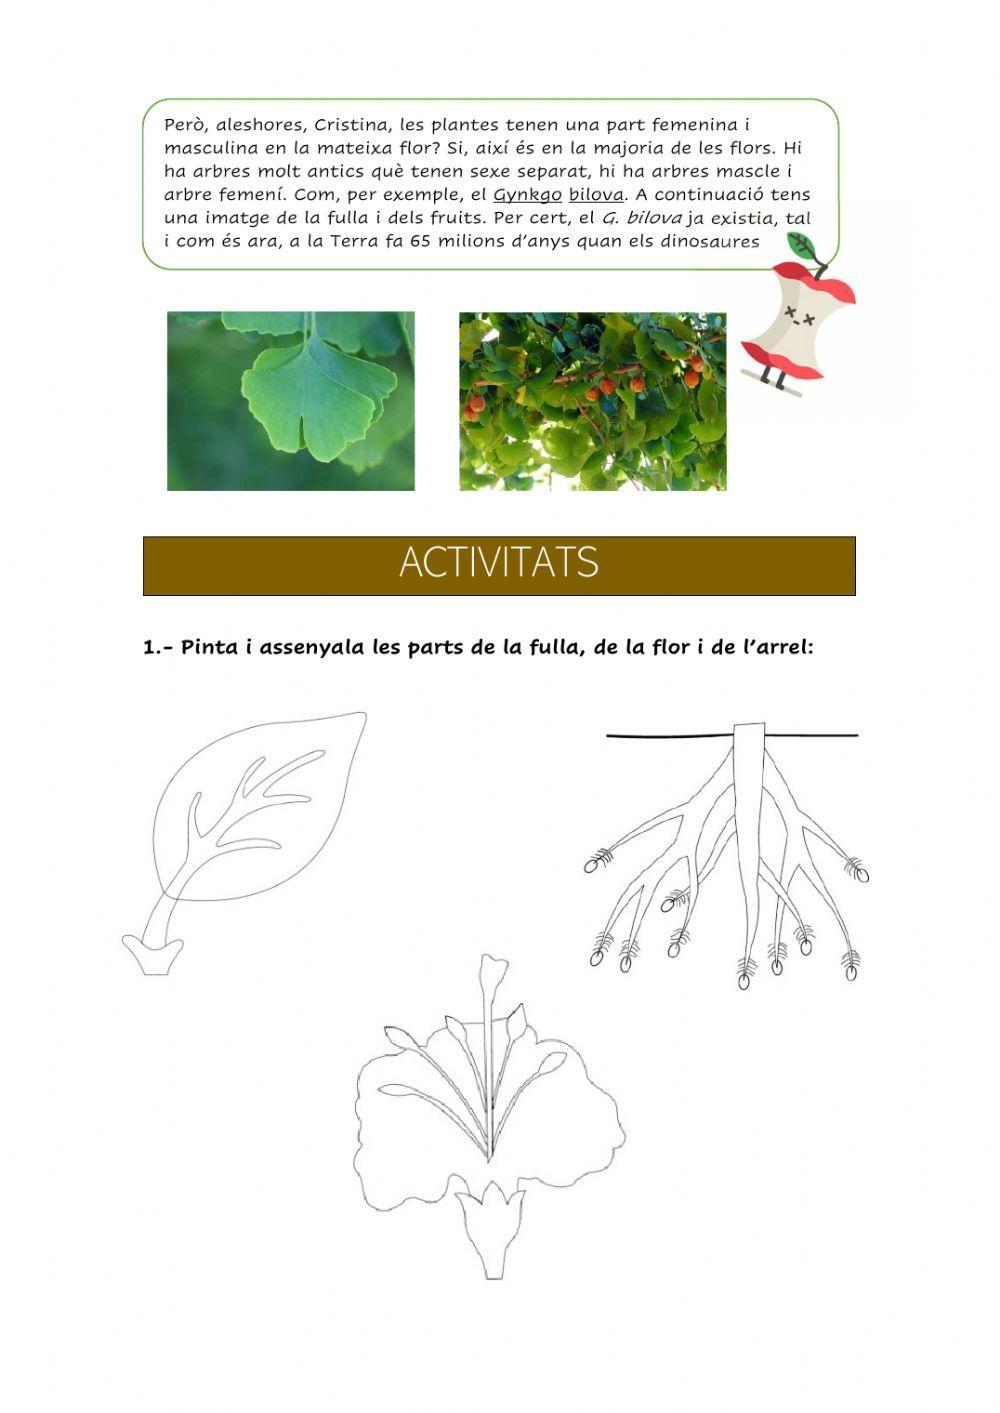 Les funcions vitals en plantes